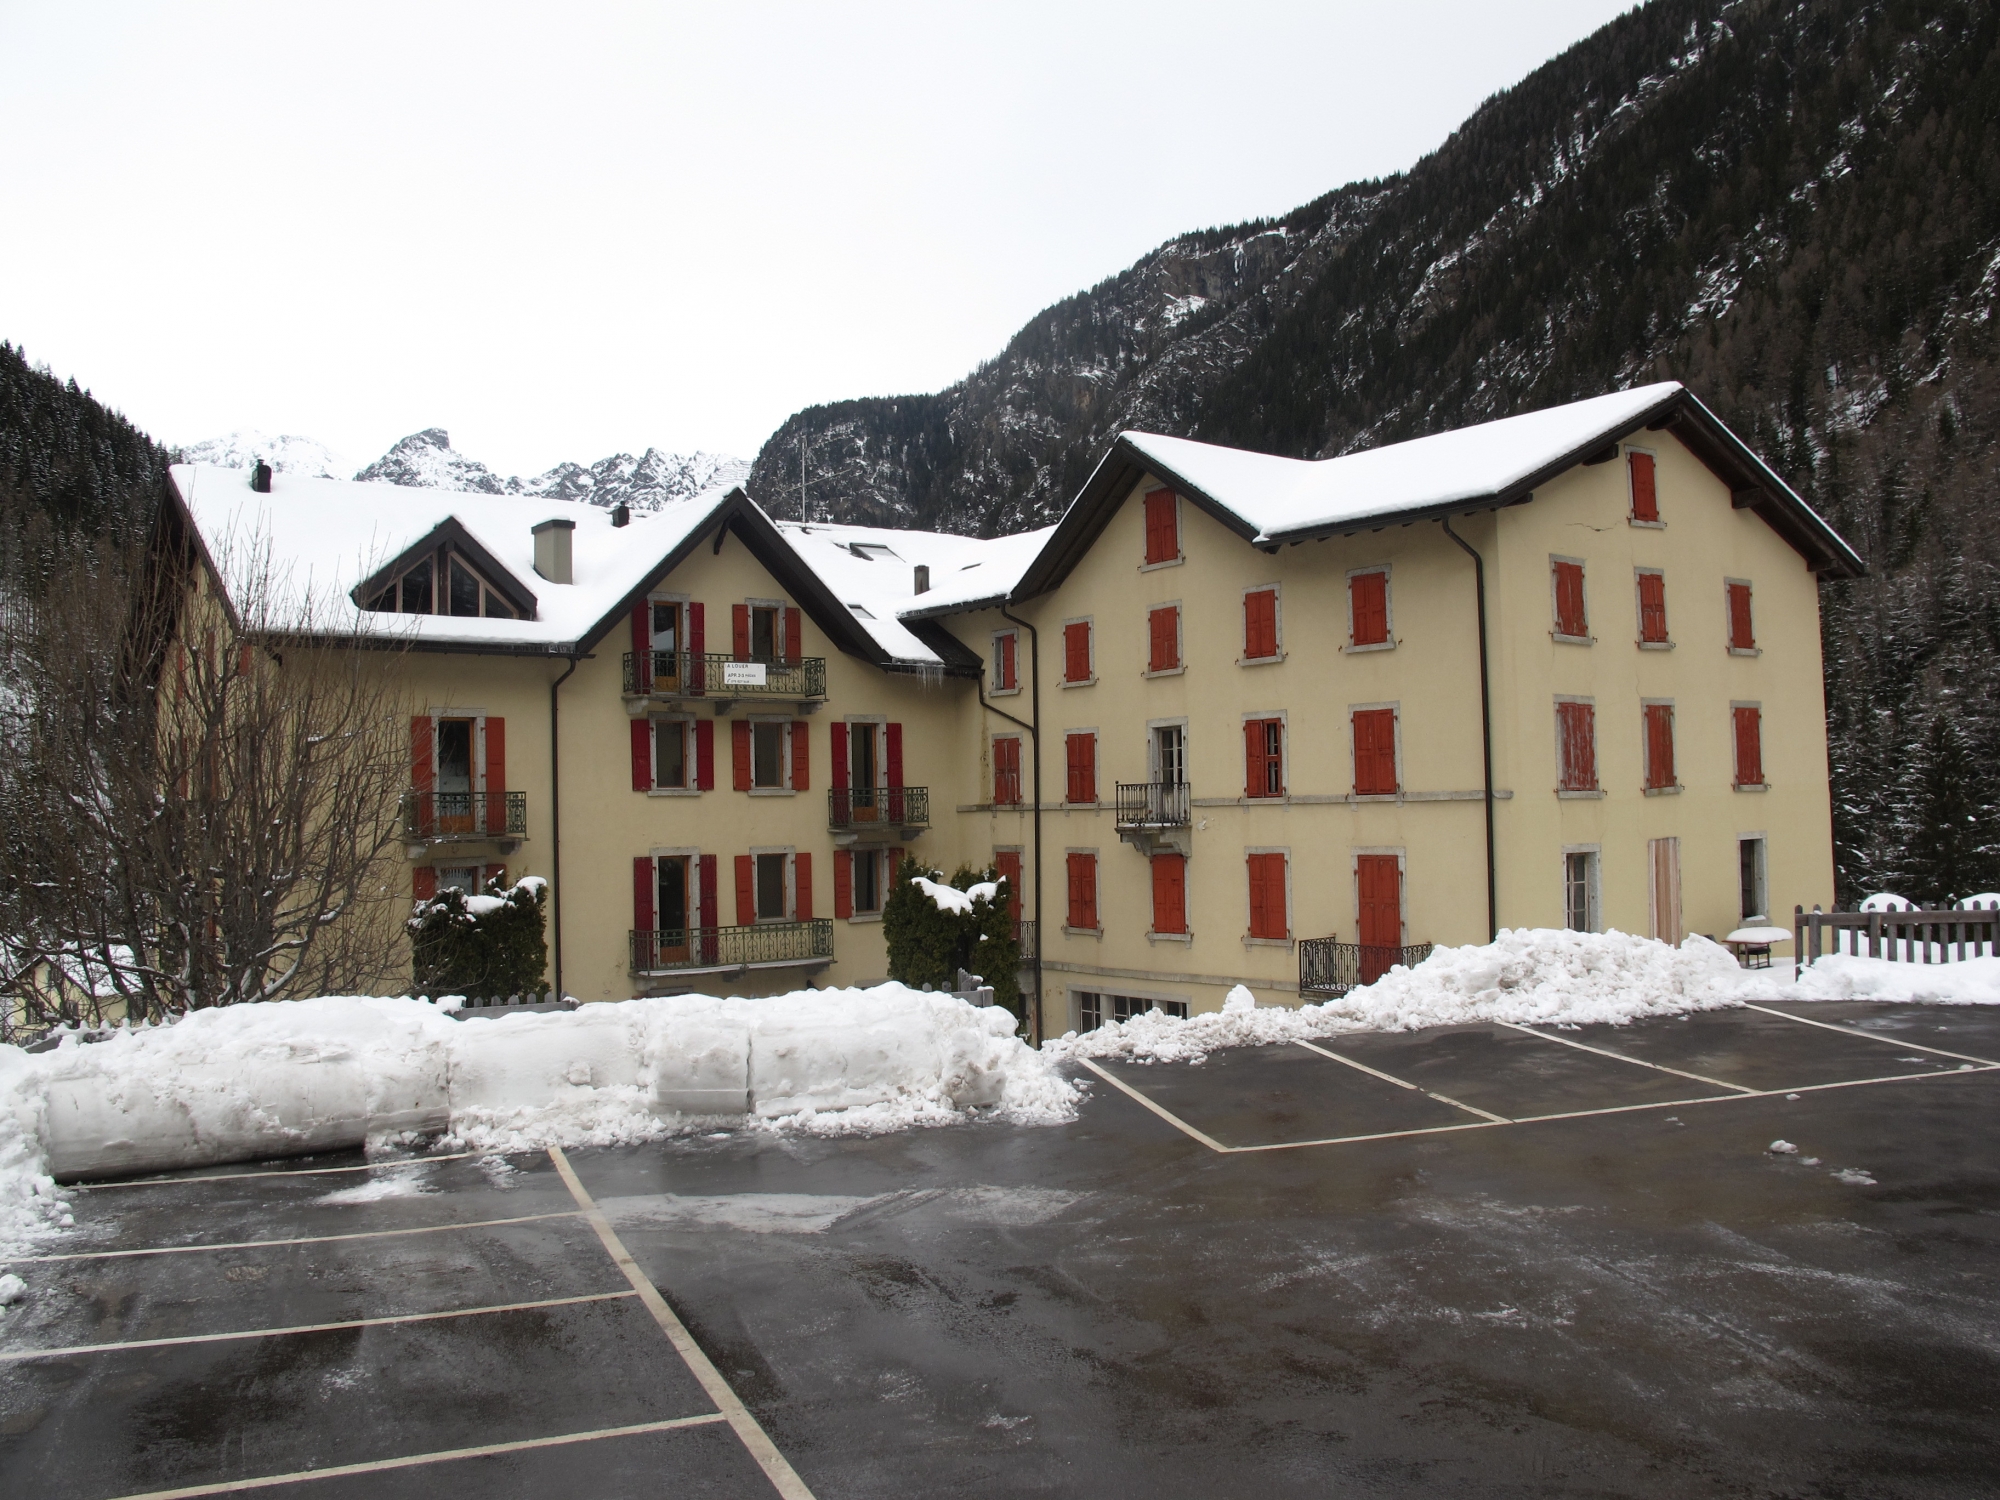 L'Hôtel du Glacier aujourd'hui. C'est la partie de droite, à l'abandon depuis des décennies, qui sera réhabilitée. La partie de gauche abrite des appartements.